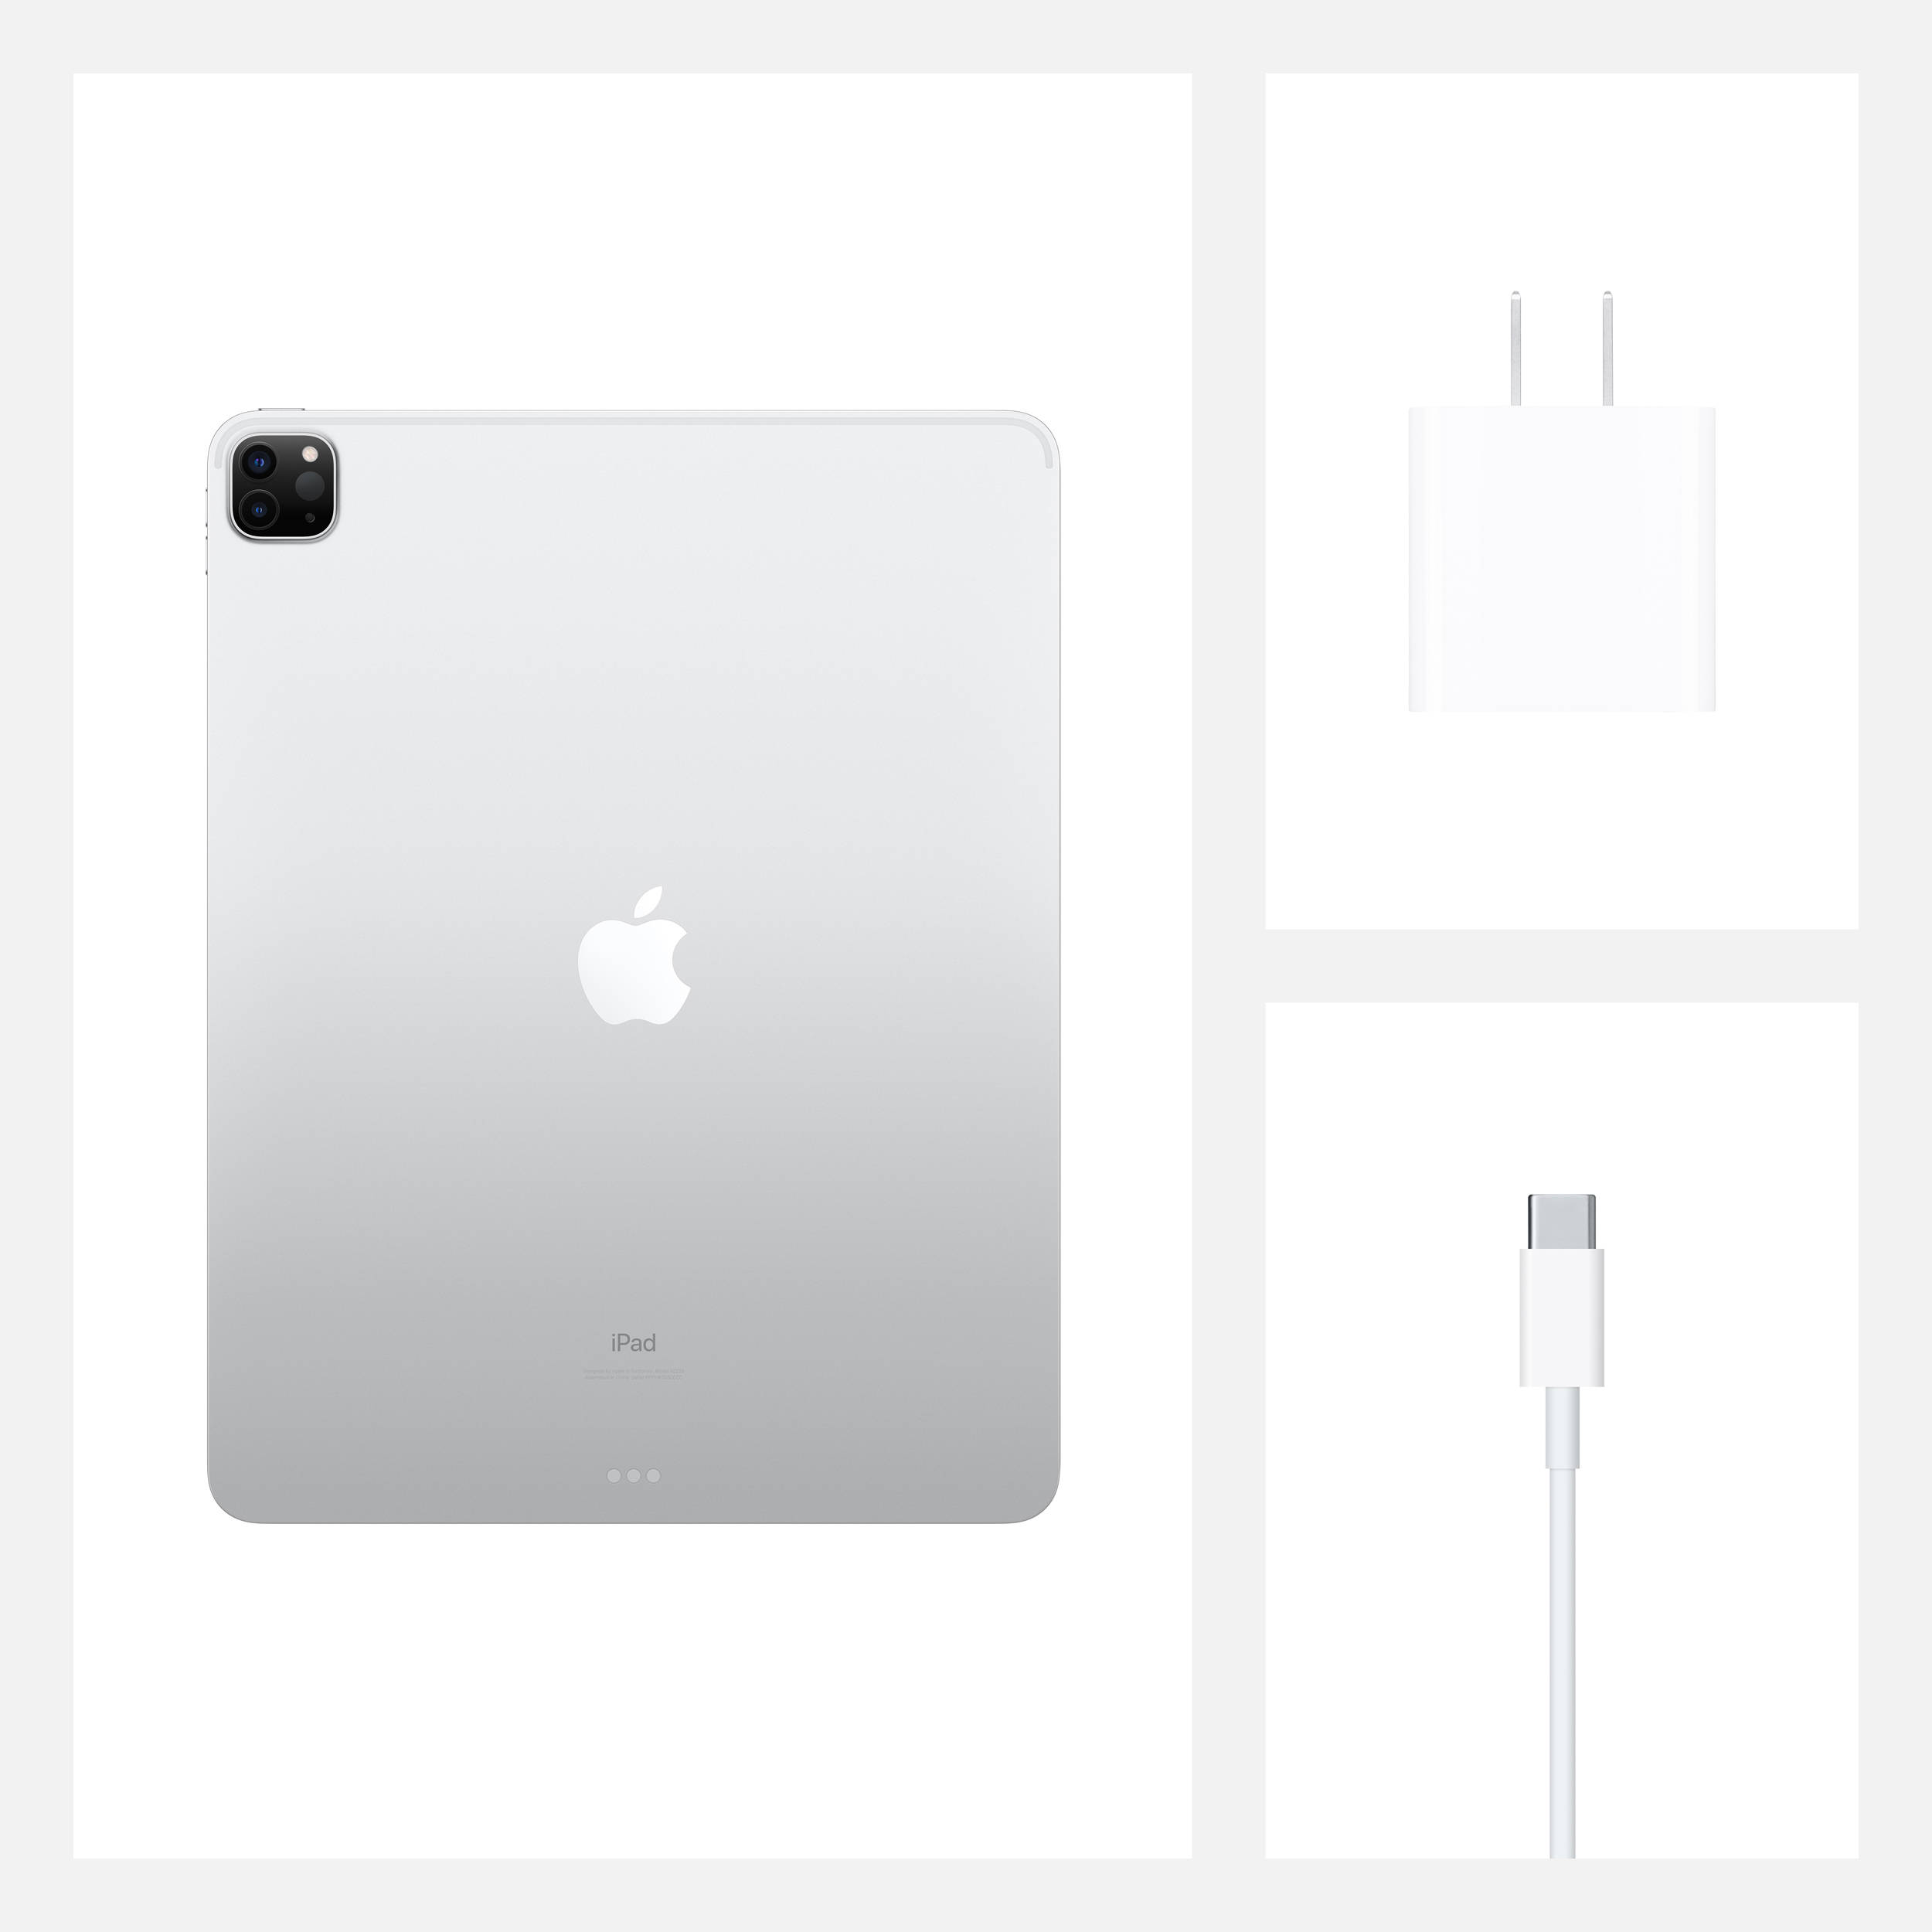 تبلت اپل مدل iPad Pro 12.9 inch 2020 4G ظرفیت 128 گیگابایت